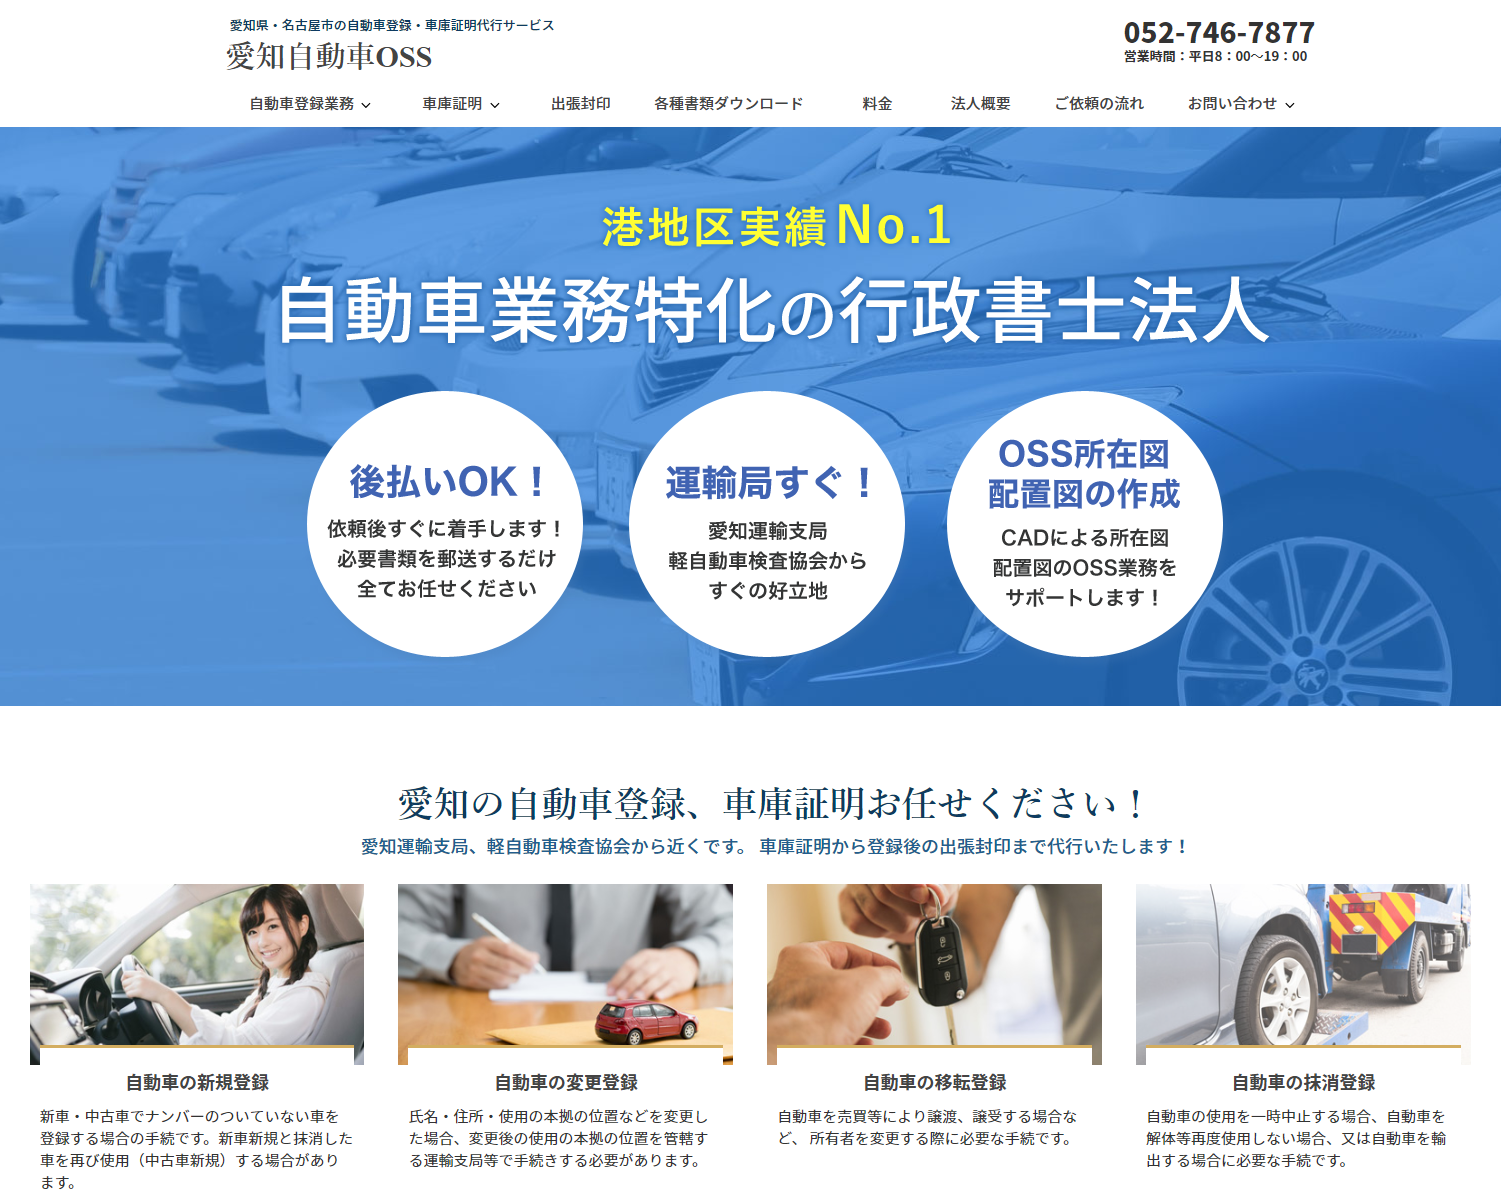 自動車に関する手続き代行サイト「愛知自動車OSS」を公開しました